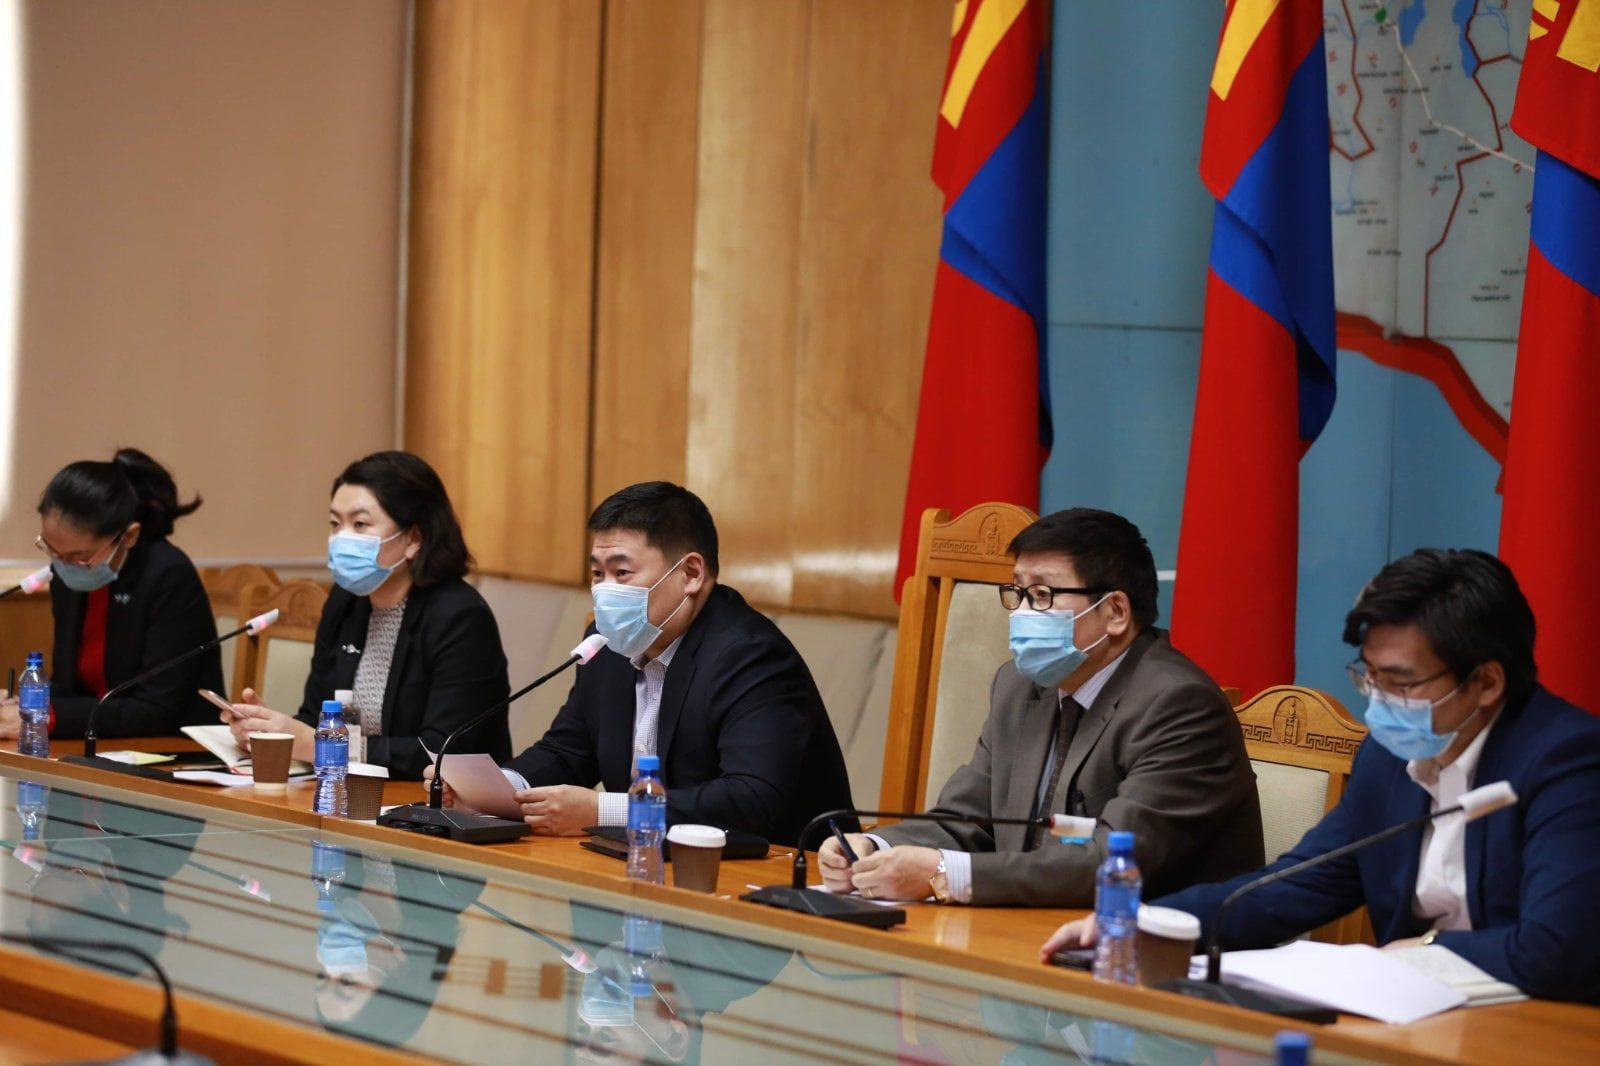 Rio Tinto는 몽골에 대한 혜택을 증대하기 위한 명확한 제안을 하고 있으며 상호 이익을 위해 협력할 준비가 되어.jpg